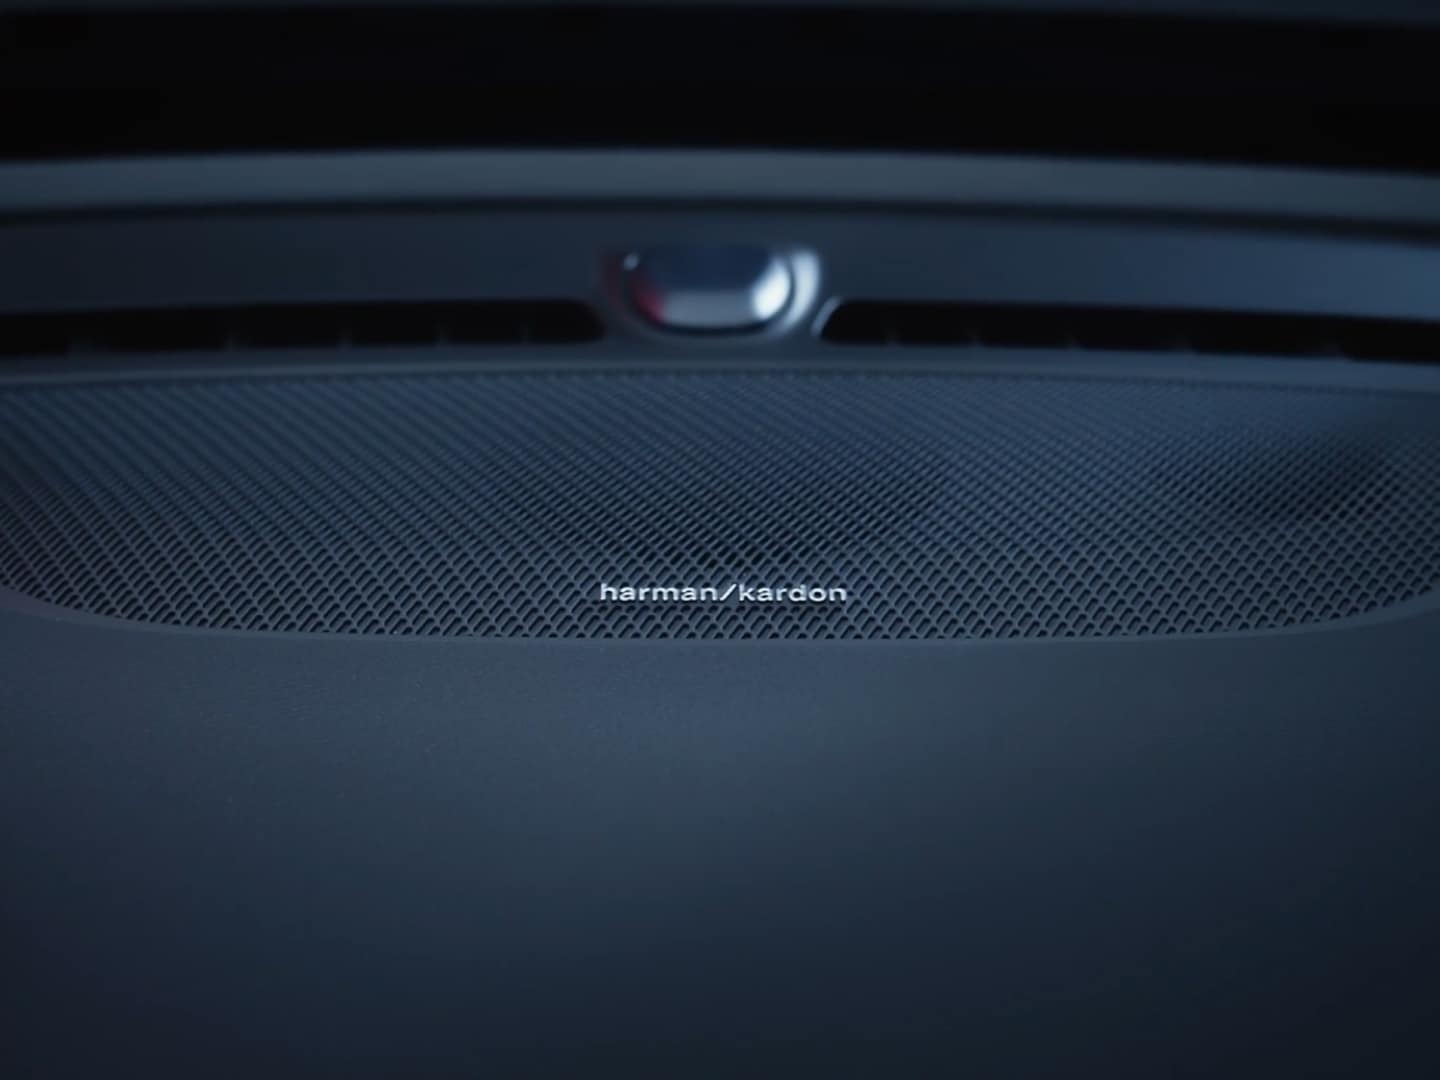 En Harman Kardon-høyttaler, en del av det førsteklasses lydsystemet som er tilgjengelig i Volvo EC40.